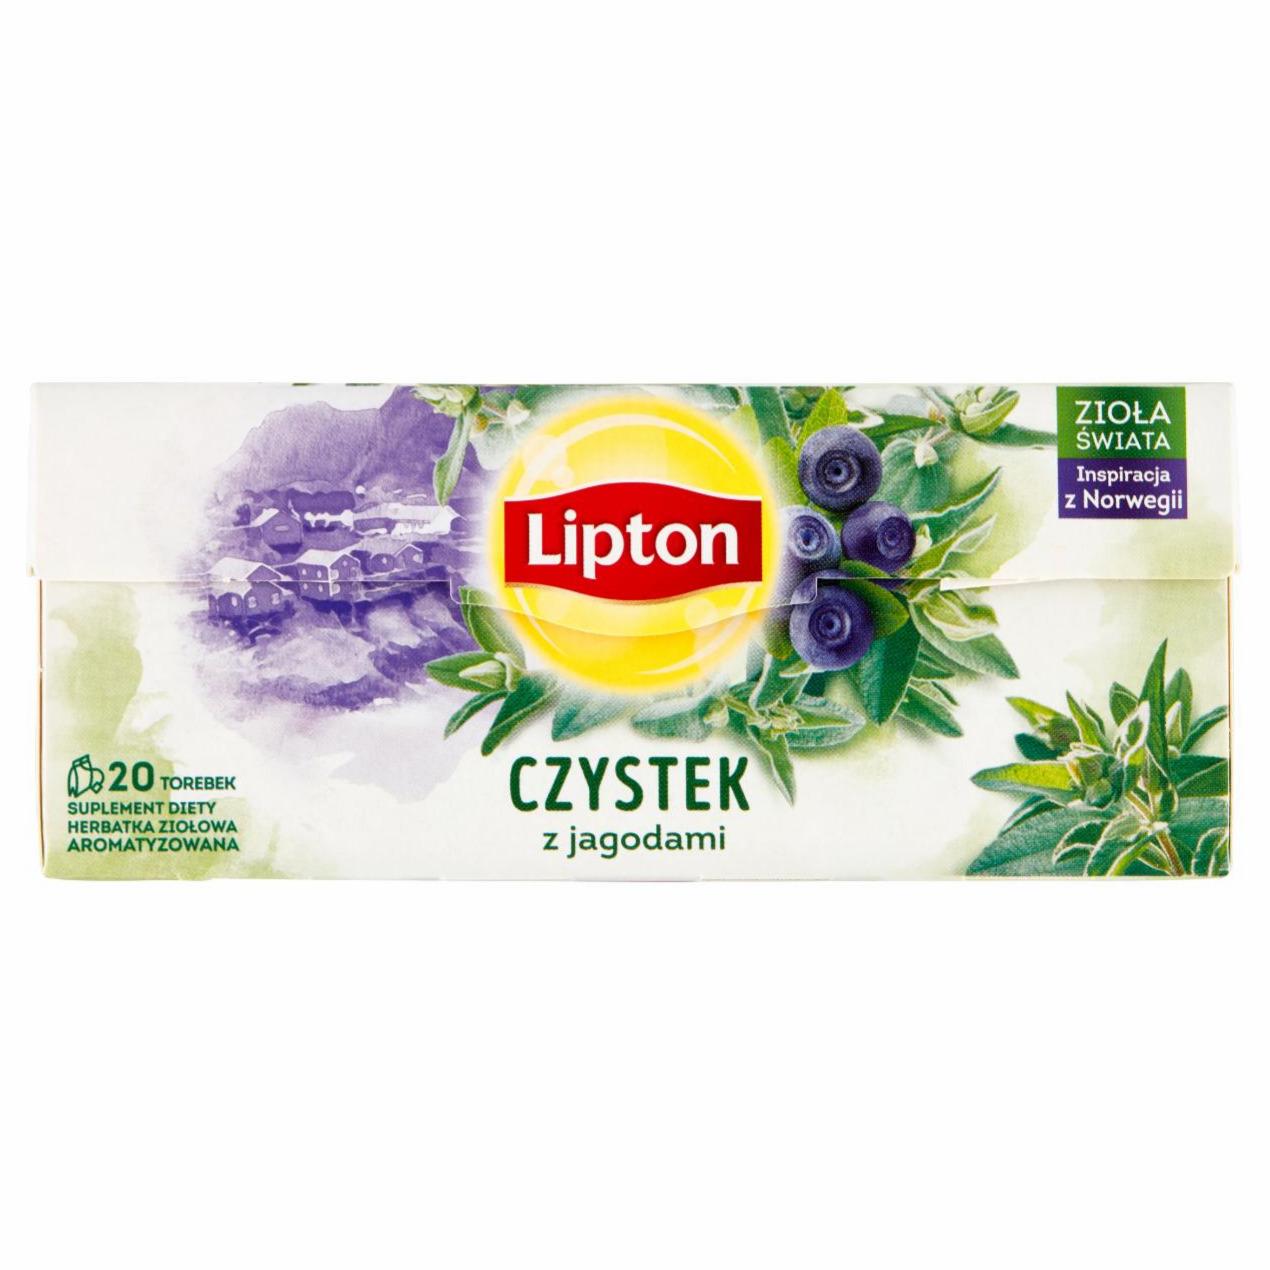 Zdjęcia - Lipton Suplement diety herbatka ziołowa aromatyzowana czystek z jagodami 20 g (20 torebek)